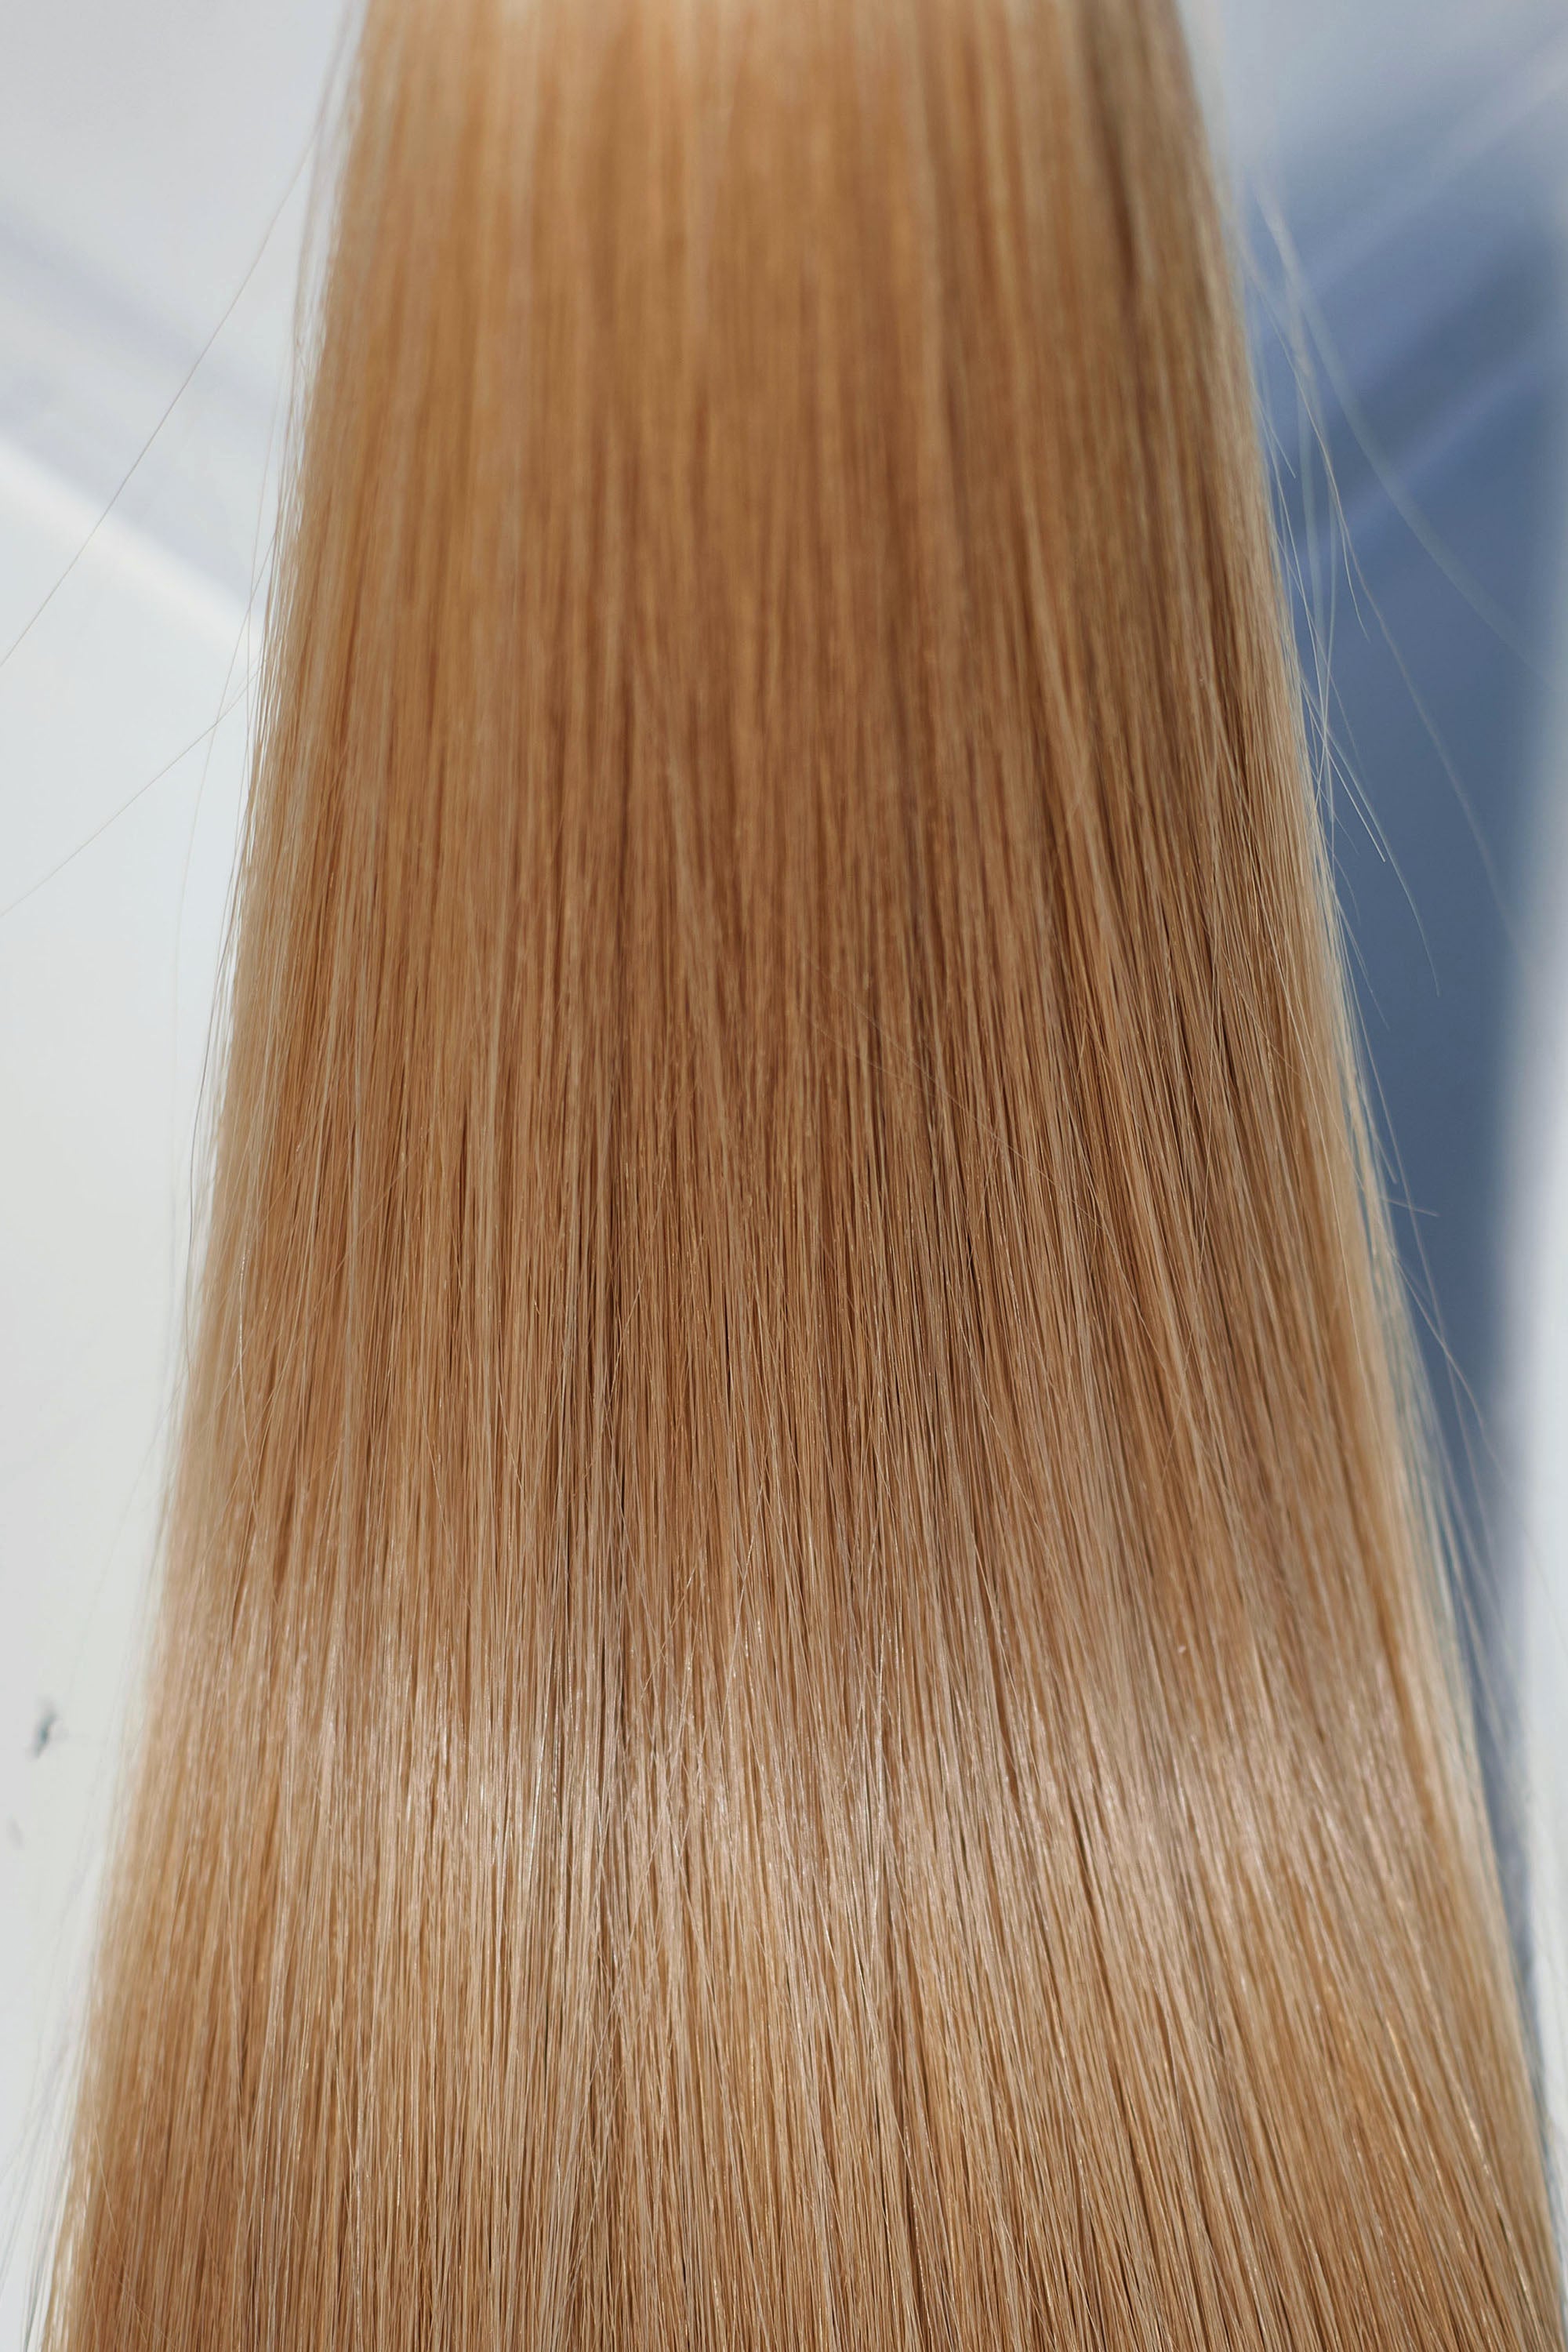 Behair professional Bulk hair "Premium" 26" (65cm) Natural Straight Gold Sand #18 - 25g hair extensions